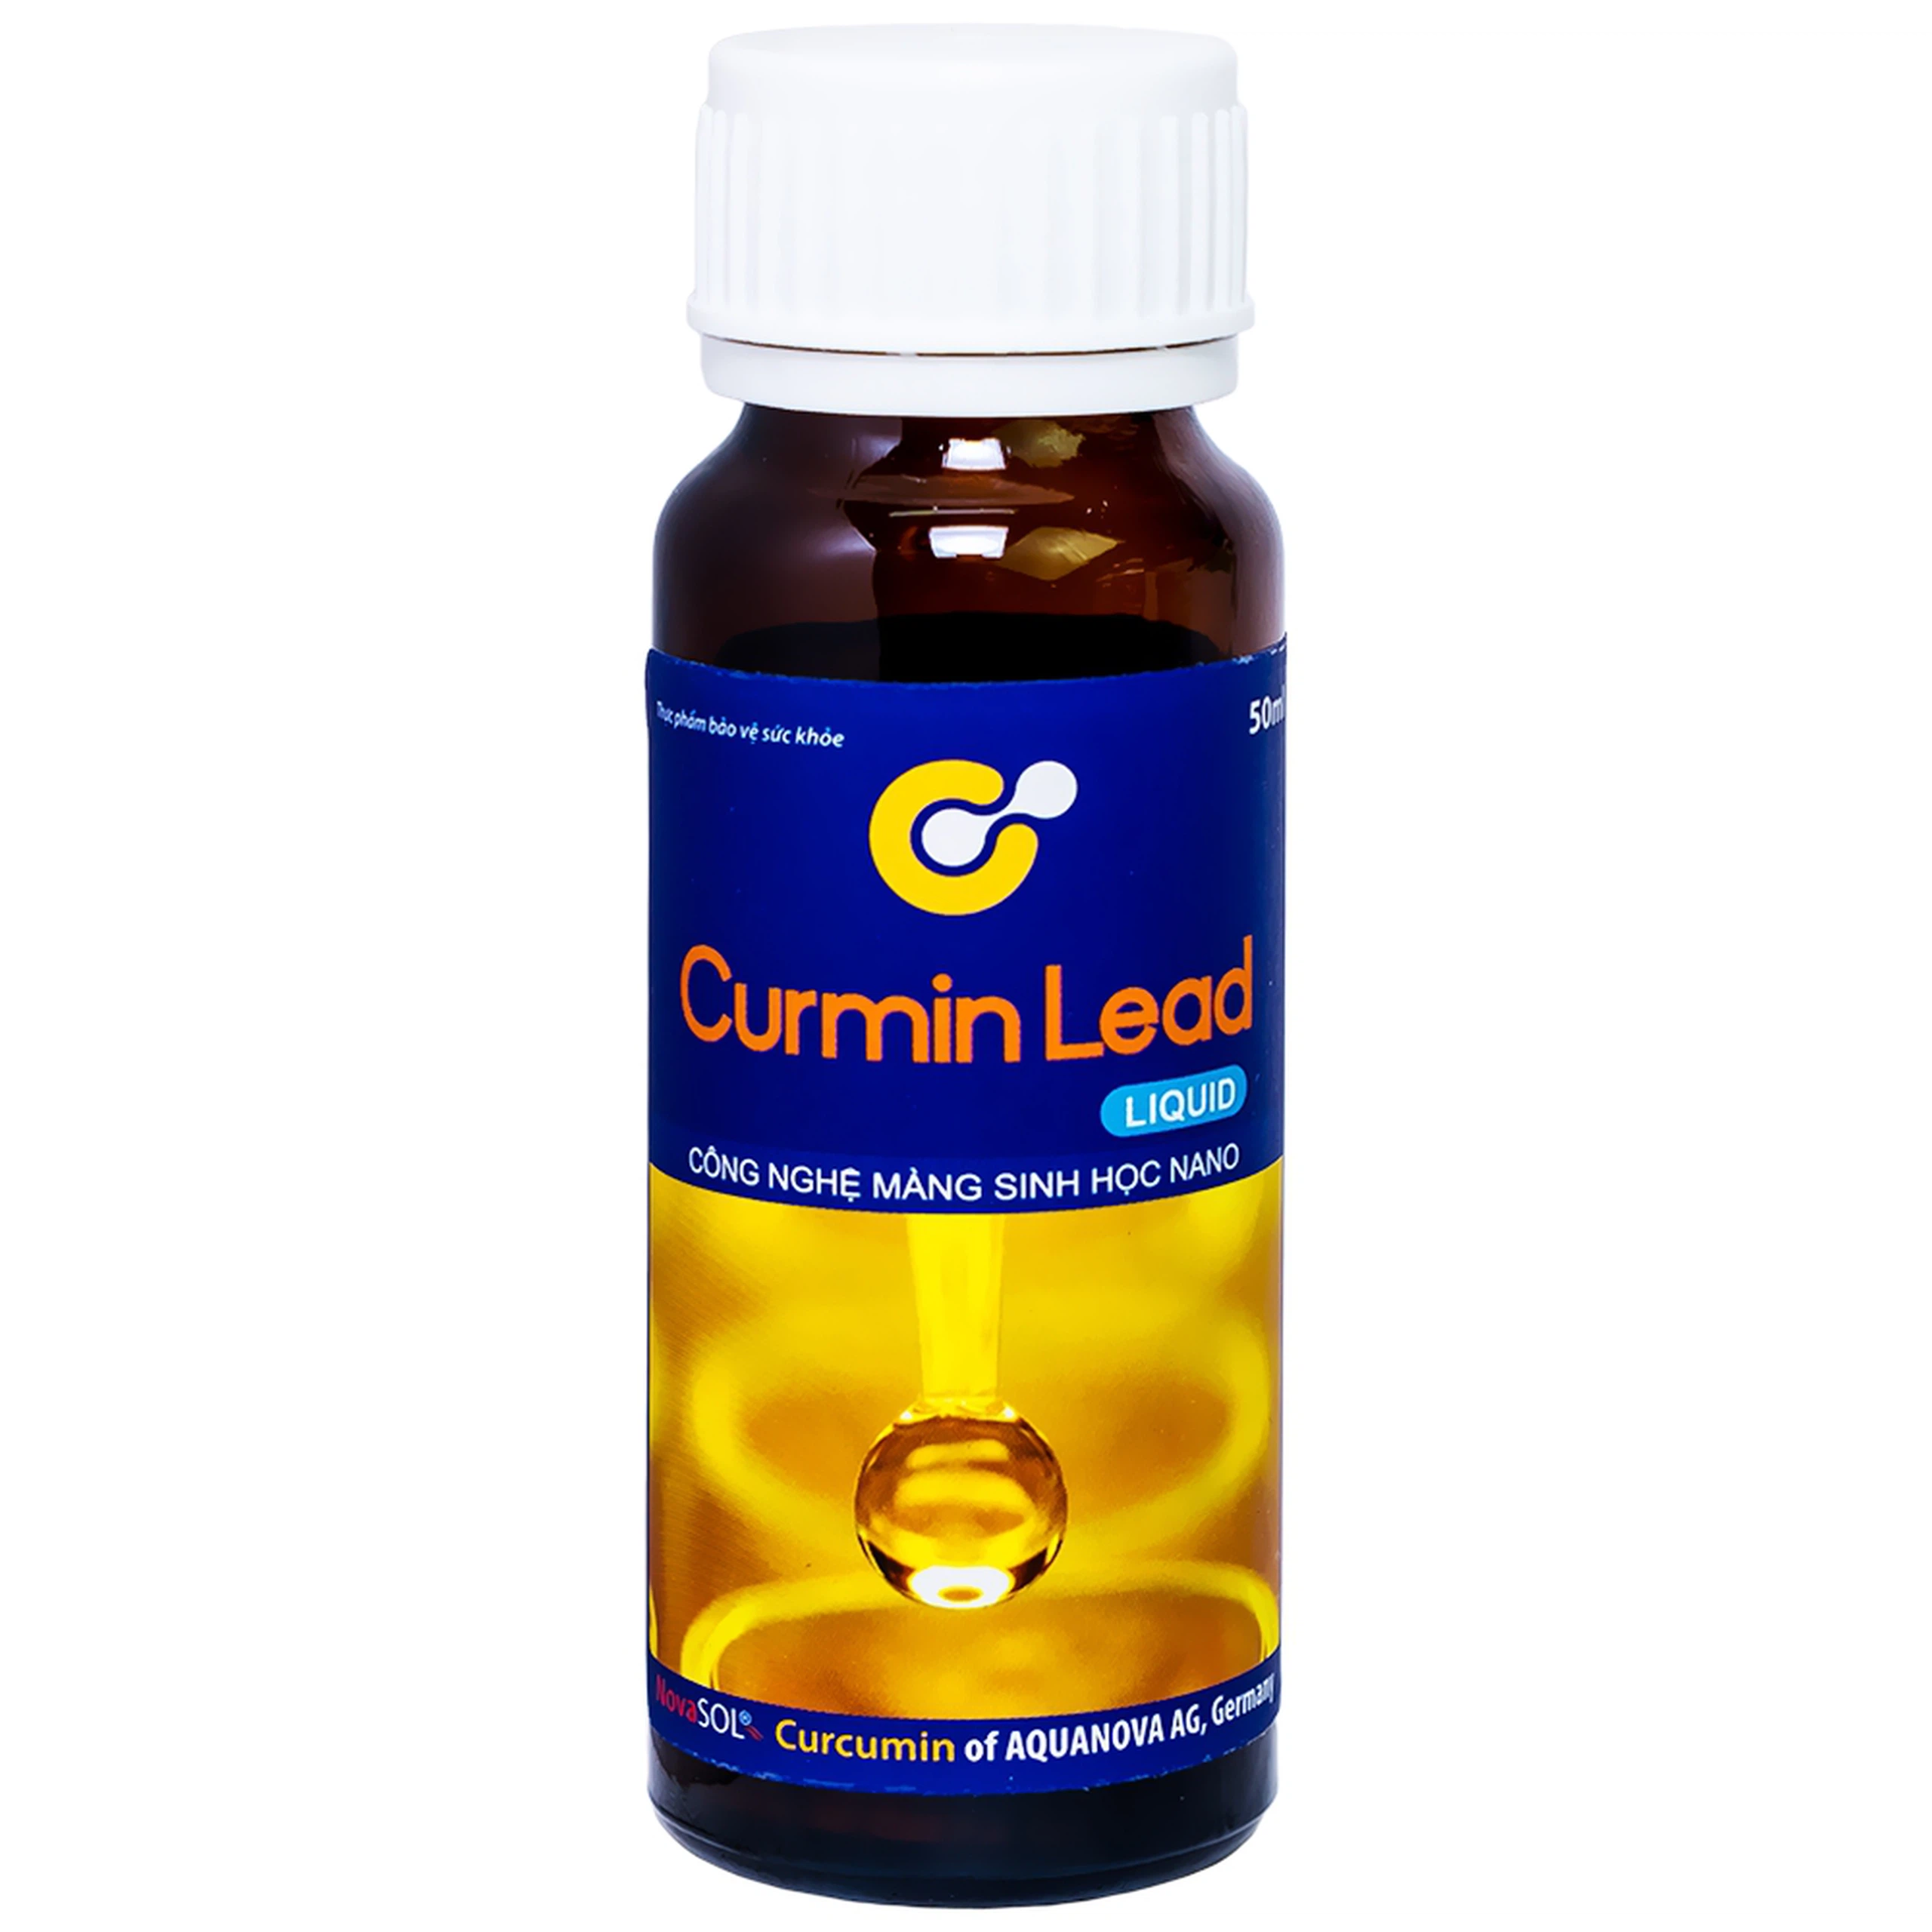 Dung dịch Curmin Lead Liquid QD-Meliphar hỗ trợ giảm triệu chứng viêm loét dạ dày, hành tá tràng (50ml)